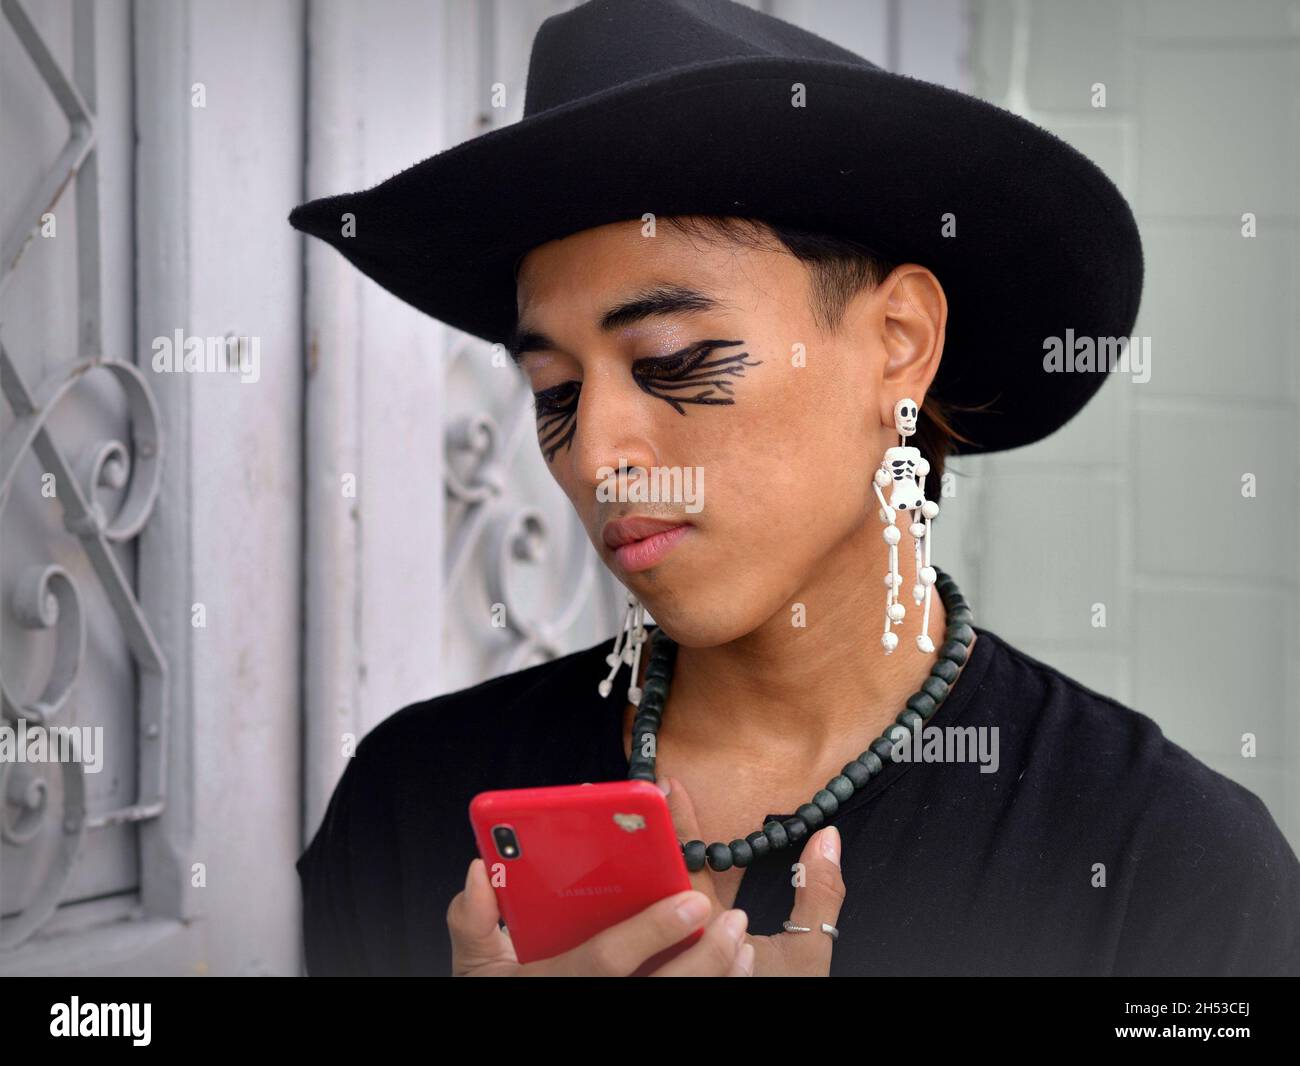 Joli jeune non binaire mexicain Latino boucles d'oreilles squelette Day of the Dead porte un chapeau noir et regarde son smartphone rouge. Banque D'Images